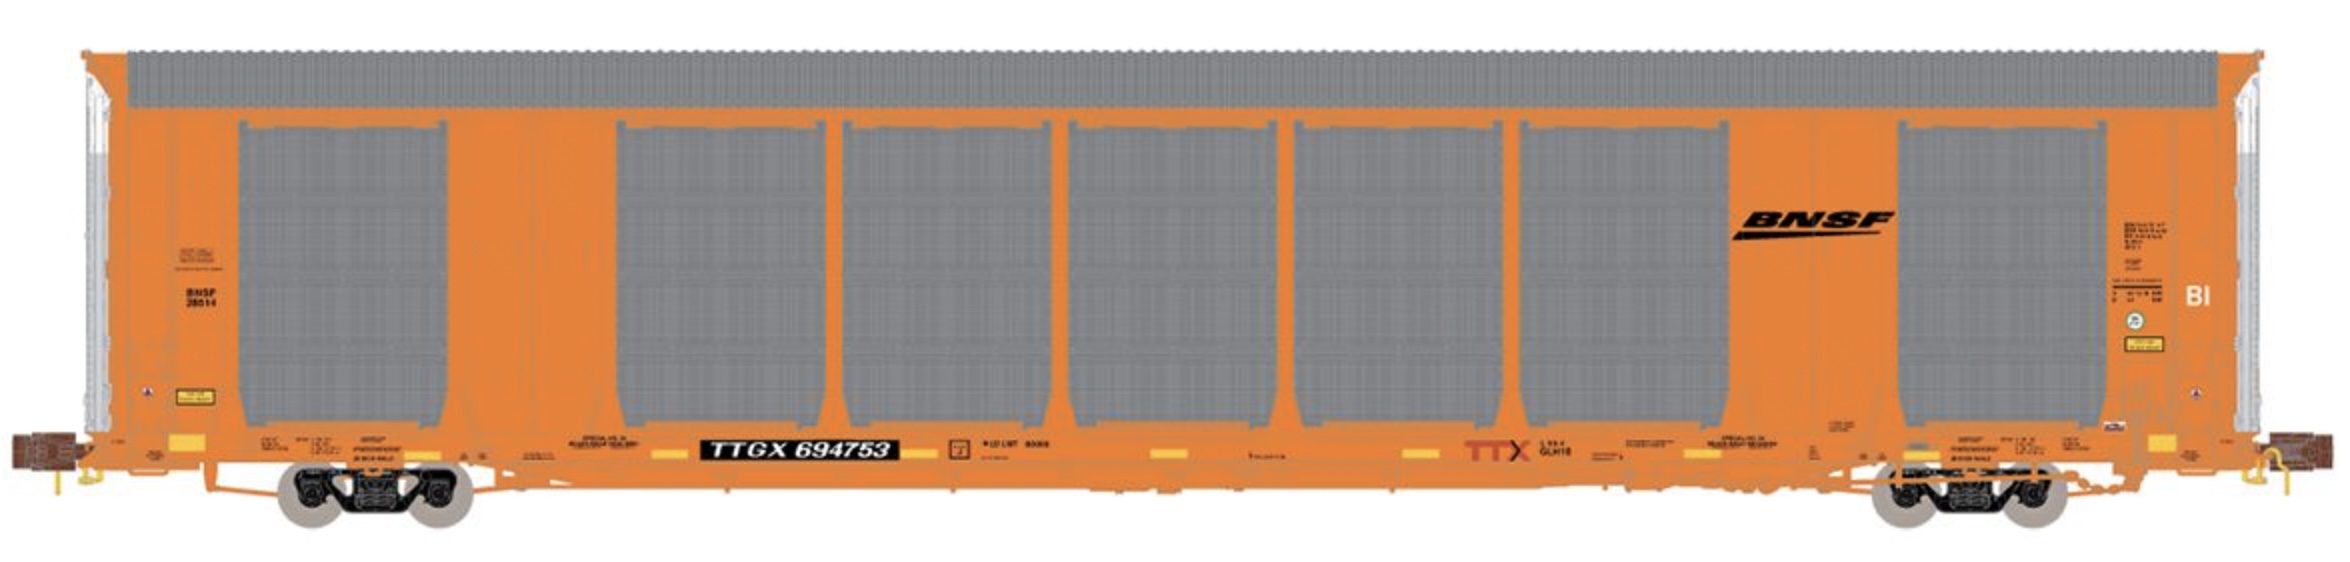 N Scale - ScaleTrains - SXT33728 - Autorack, Enclosed, Tri-Level - Burlington Northern Santa Fe - 694763